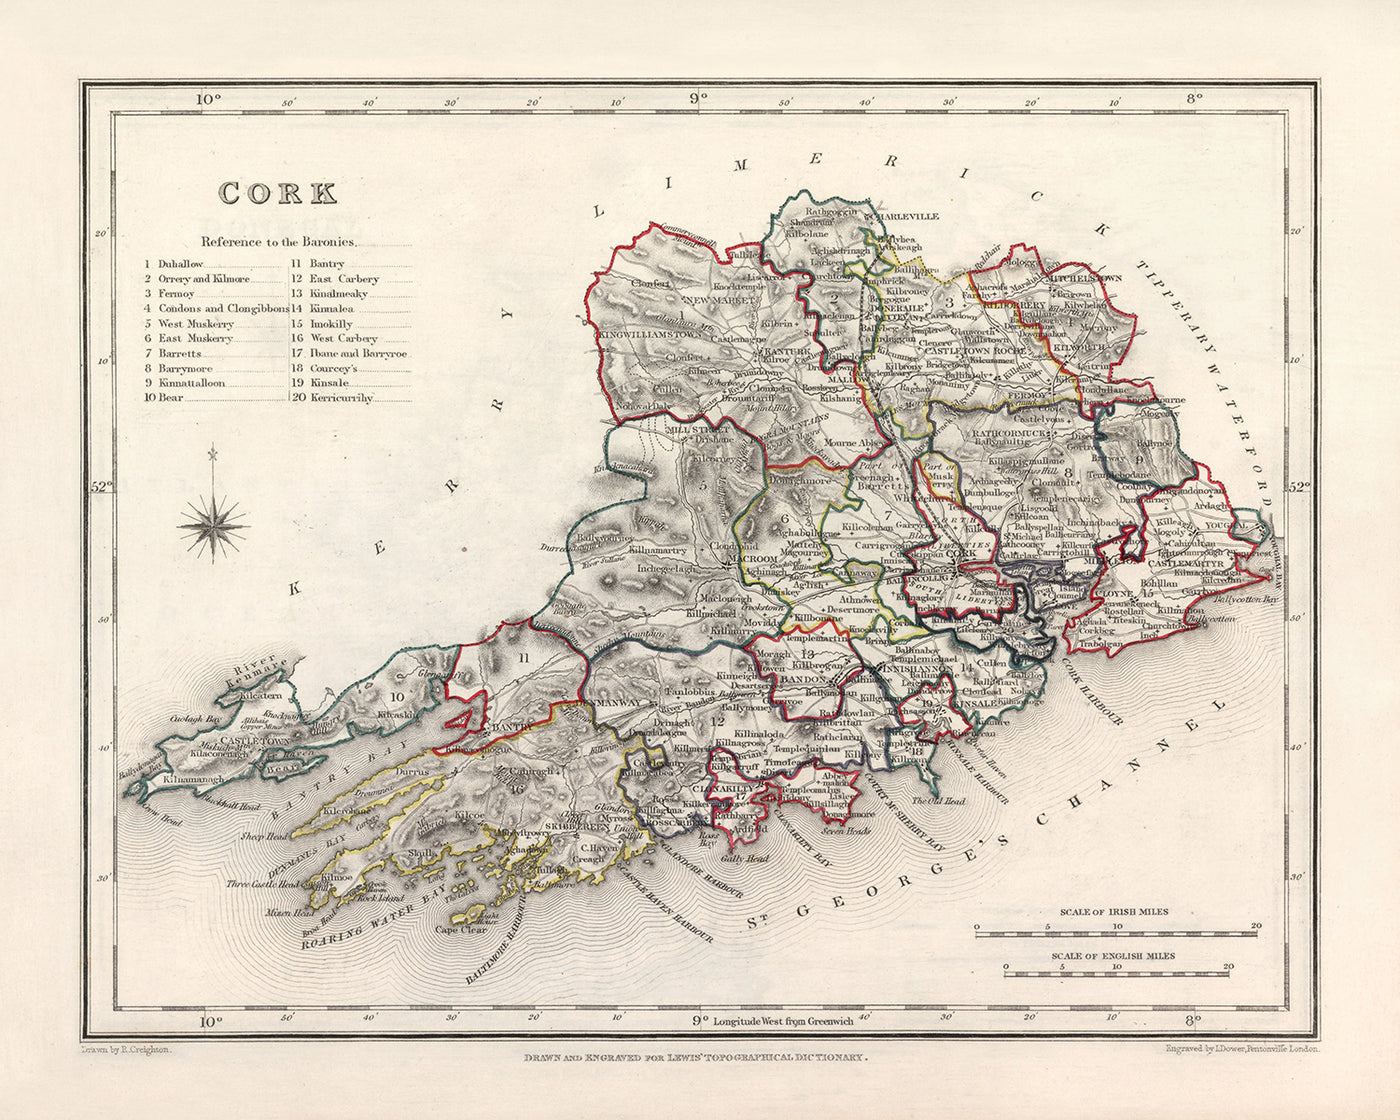 Alte Karte der Grafschaft Cork von Samuel Lewis, 1844: Cobh, Kinsale, Blarney Castle, Fota House, Mizen Head